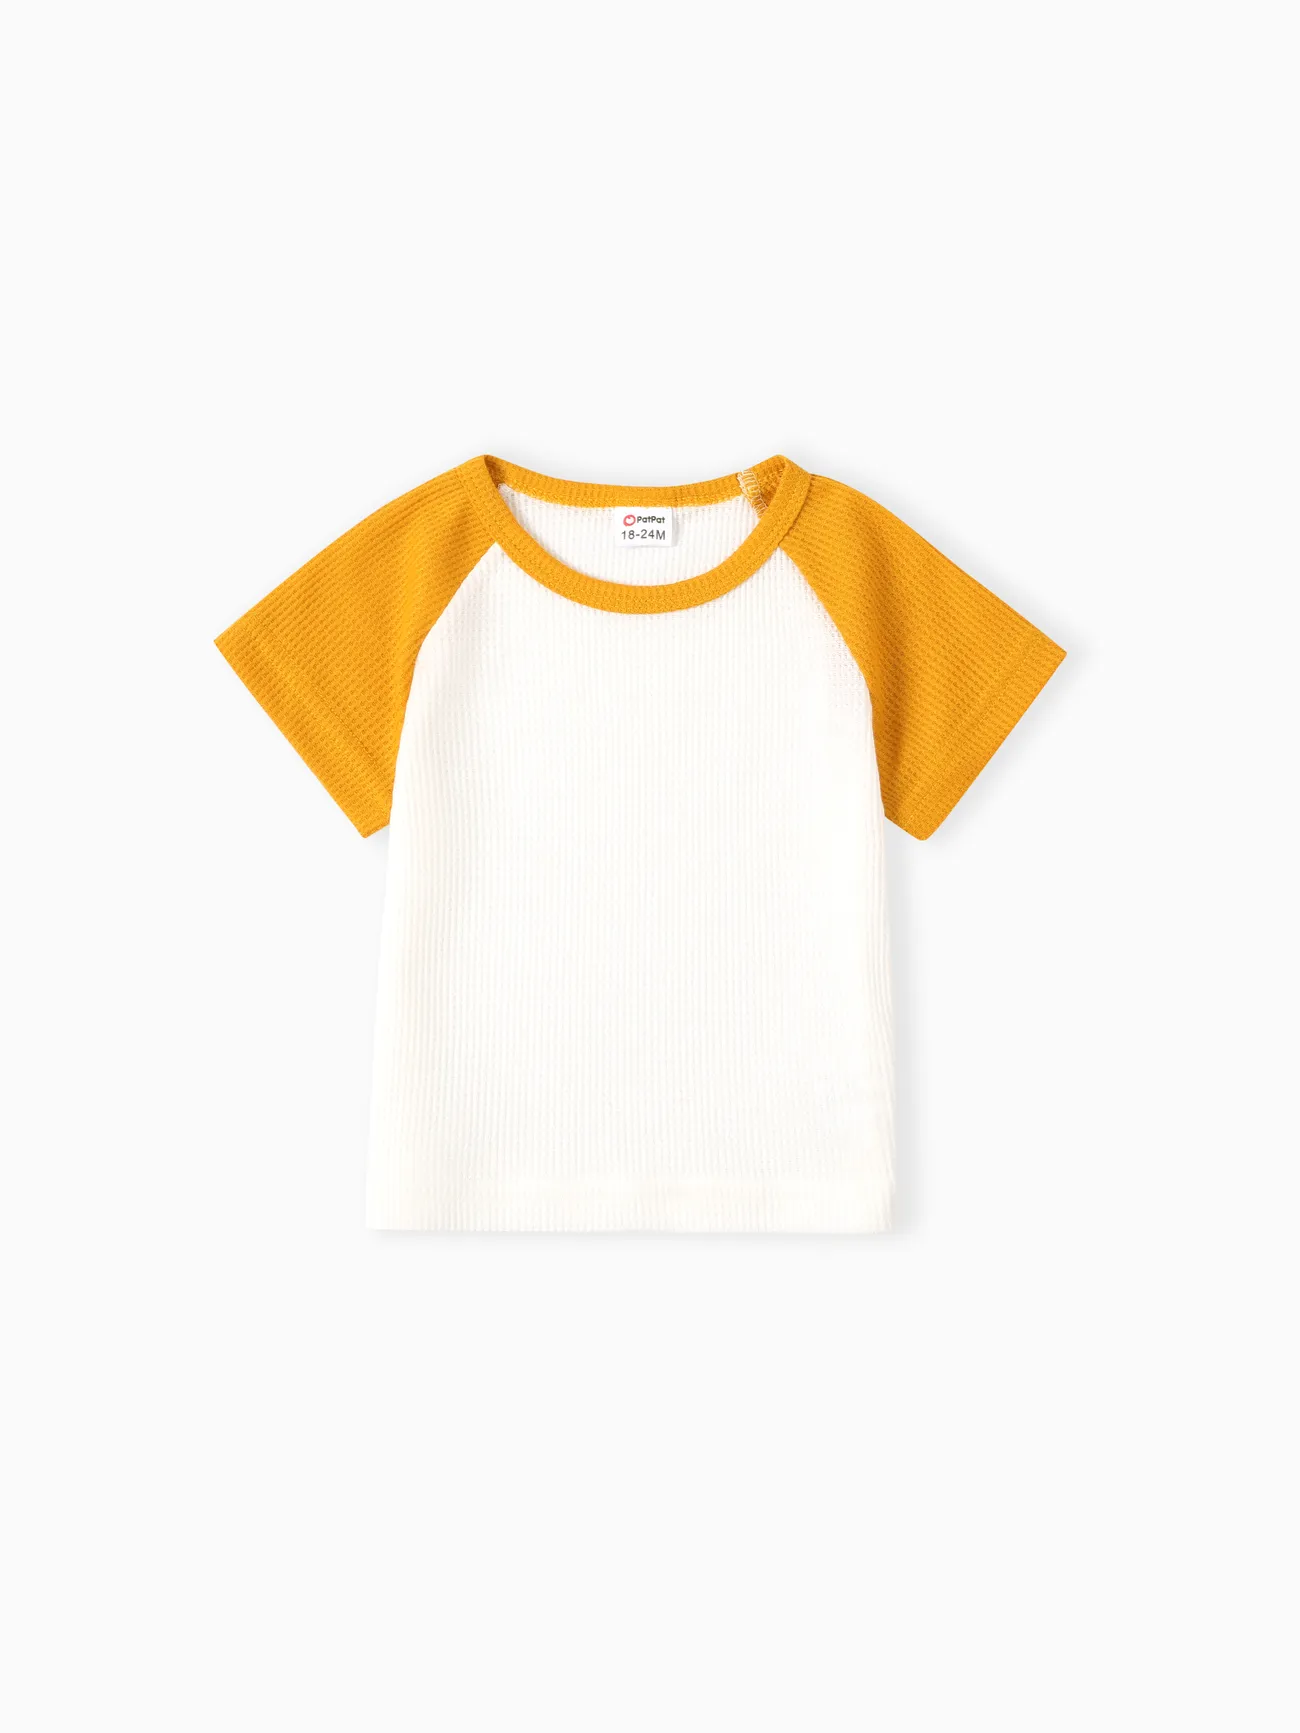 2 unidades Niño pequeño Chico Costura de tela Básico conjuntos de camiseta Amarillo big image 1